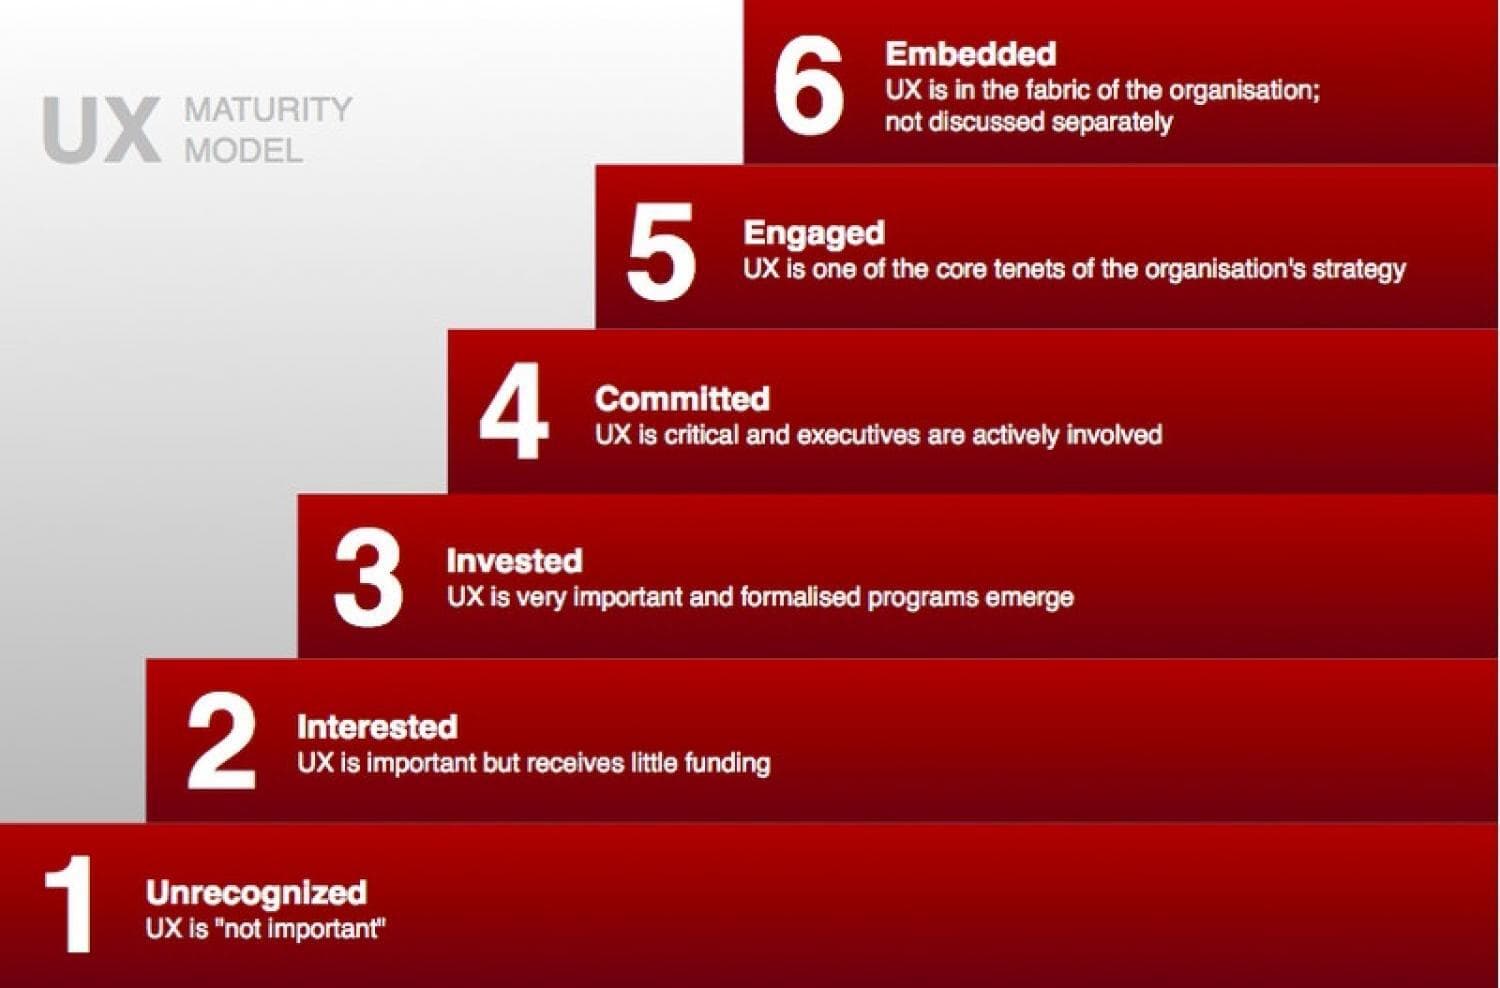 Illustrasjon av de seks nivåene av UX-modenhet i bedriften: 1. Recognized, 2. Interested, 3. Invested, 4. Committed, 5. Engaged og 6. Embedded